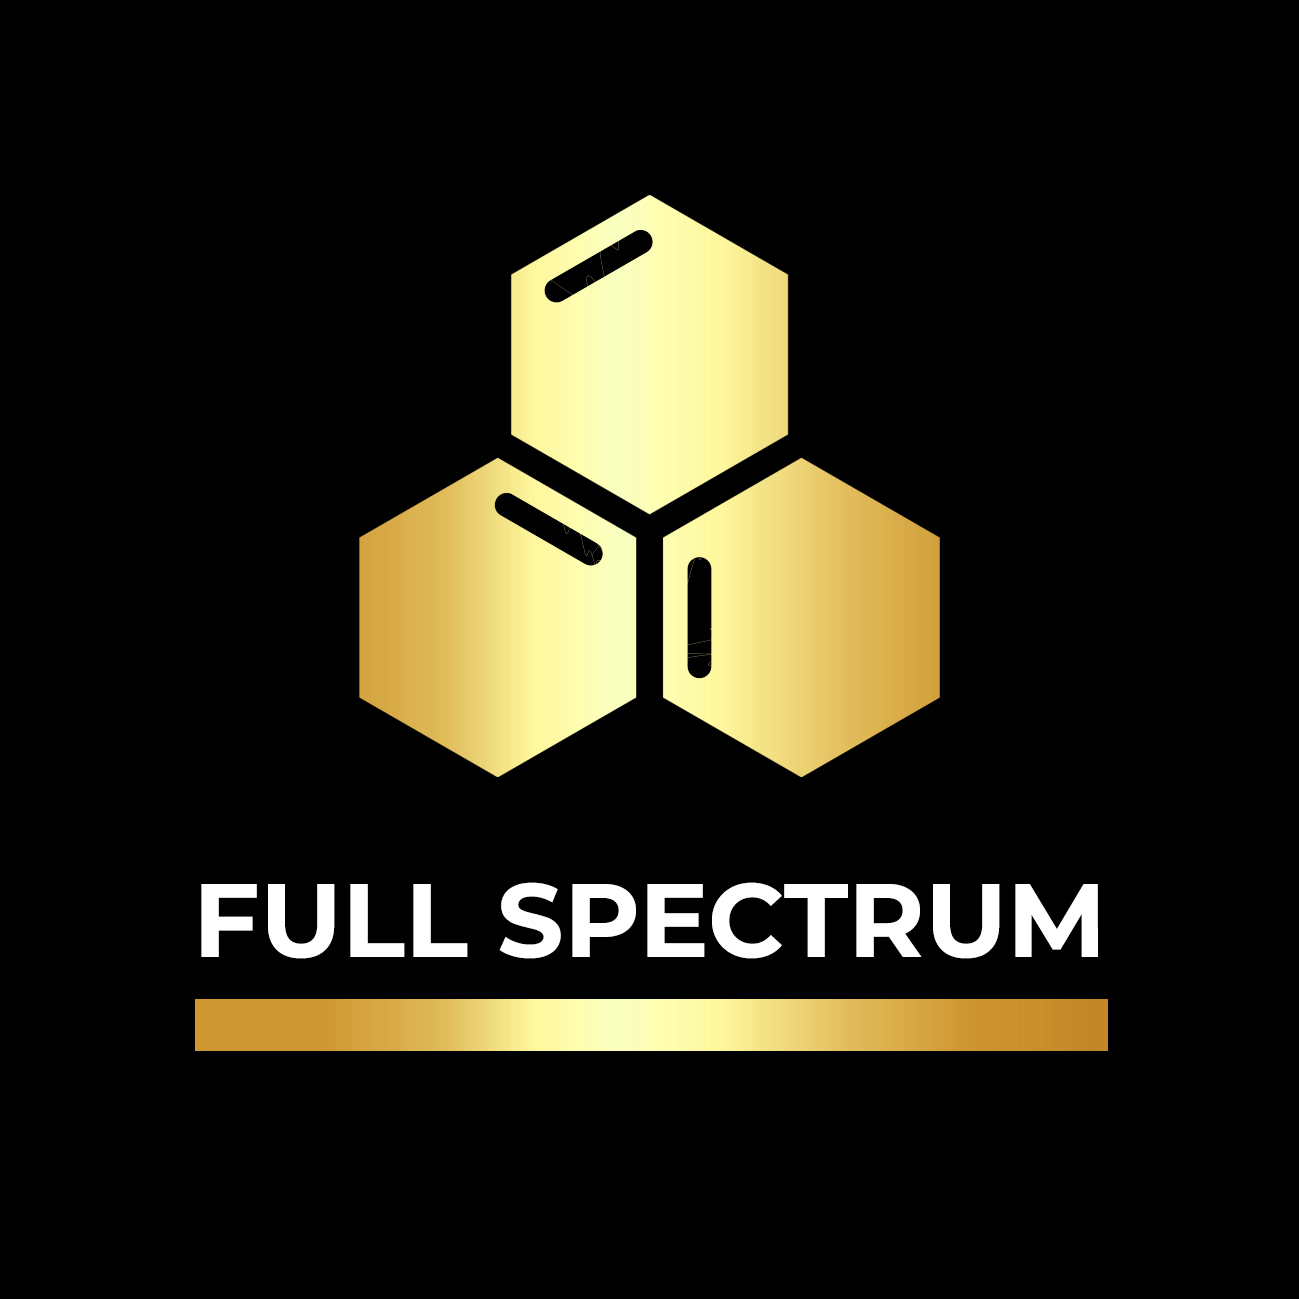 Full Spectrum Tile